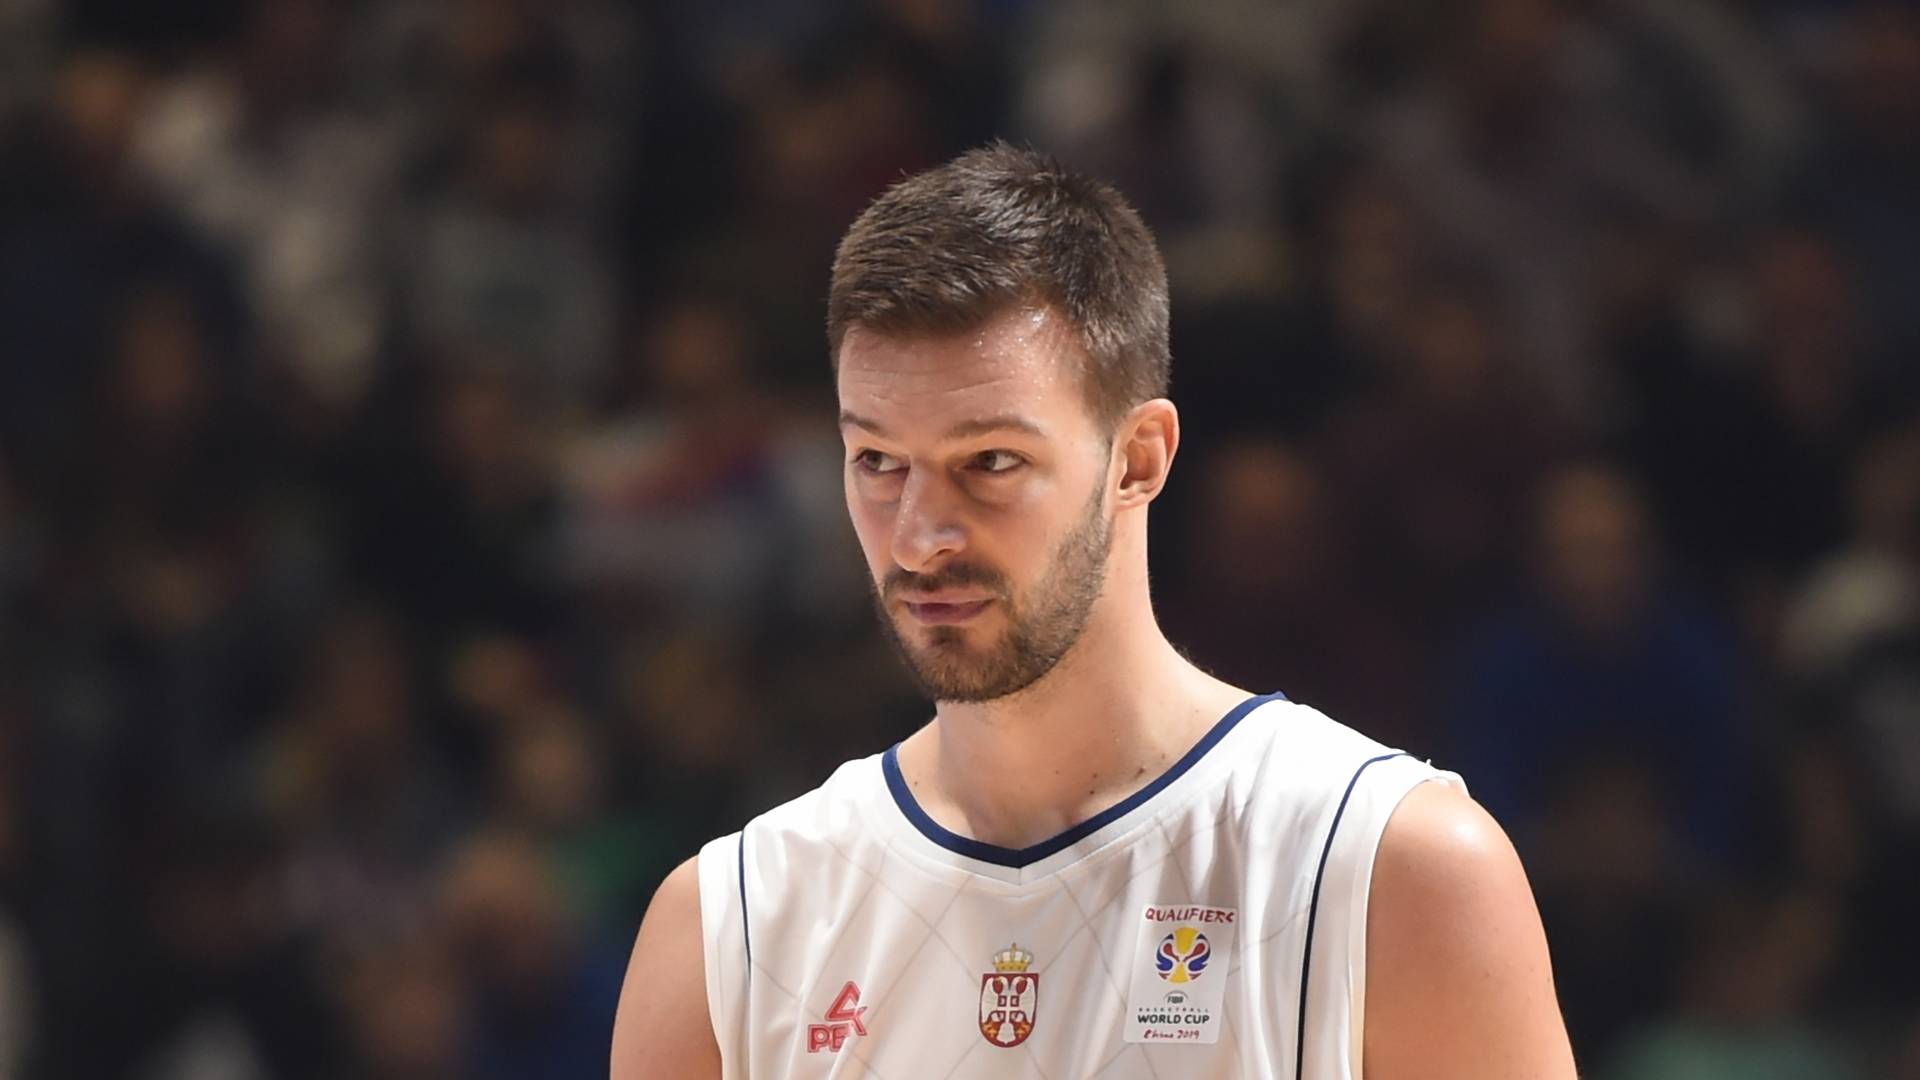 Košarkaš Stevan Jelovac prebačen na lečenje u Srbiju, i dalje životno ugrožen